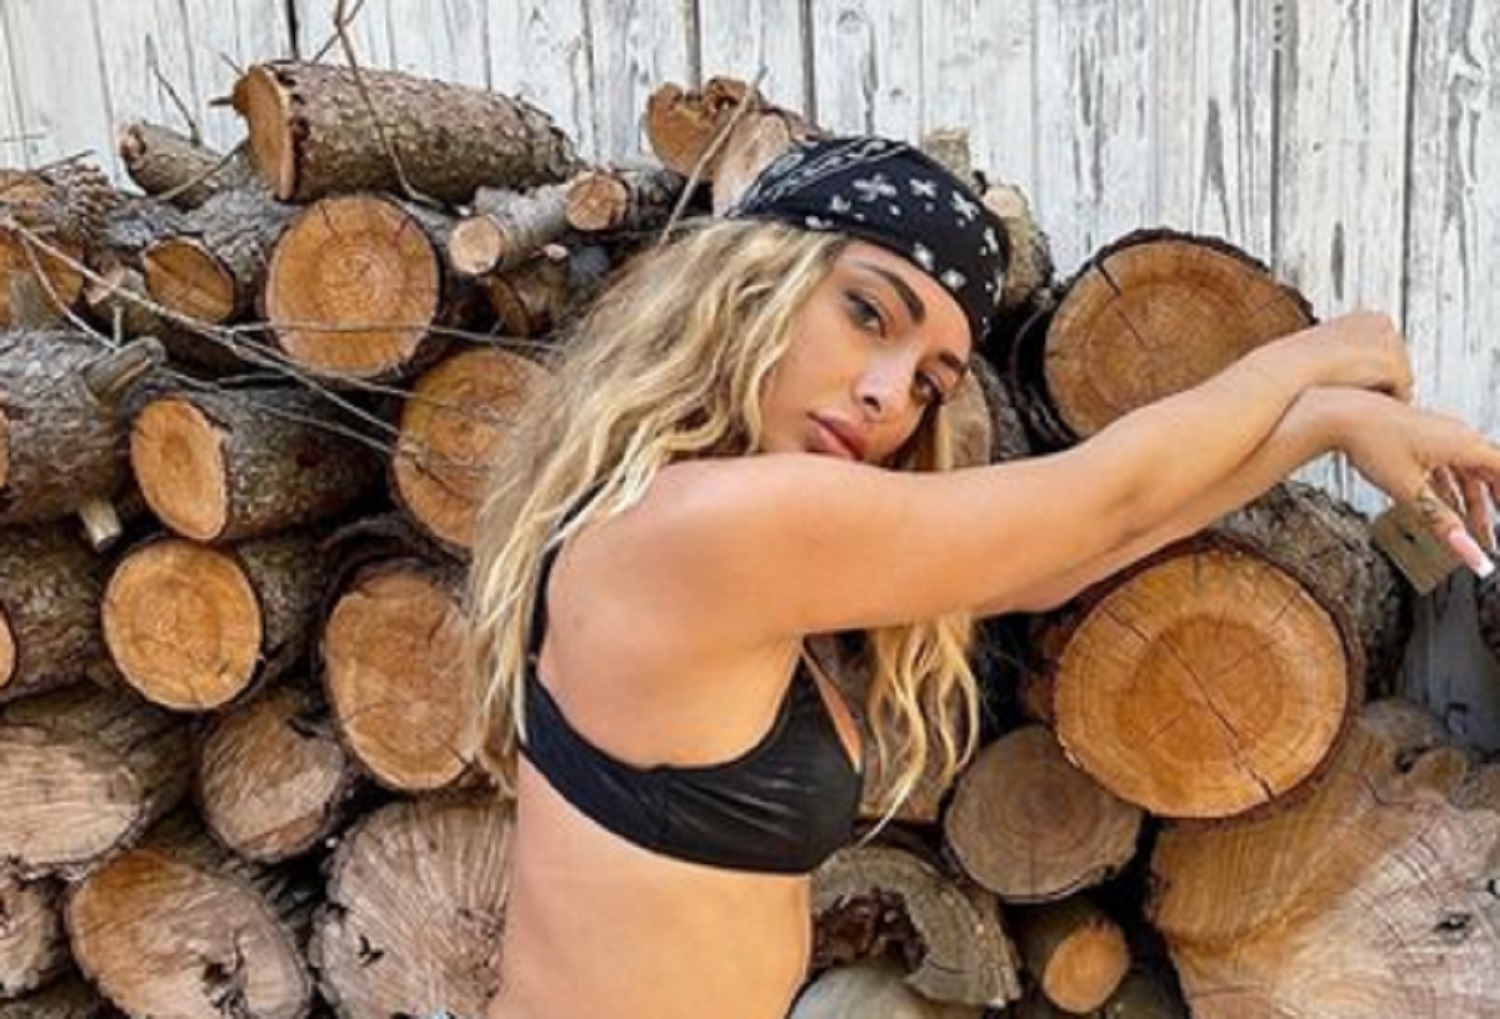 Maria Piamonte Nude - fitness model Archivi | Notizie Audaci